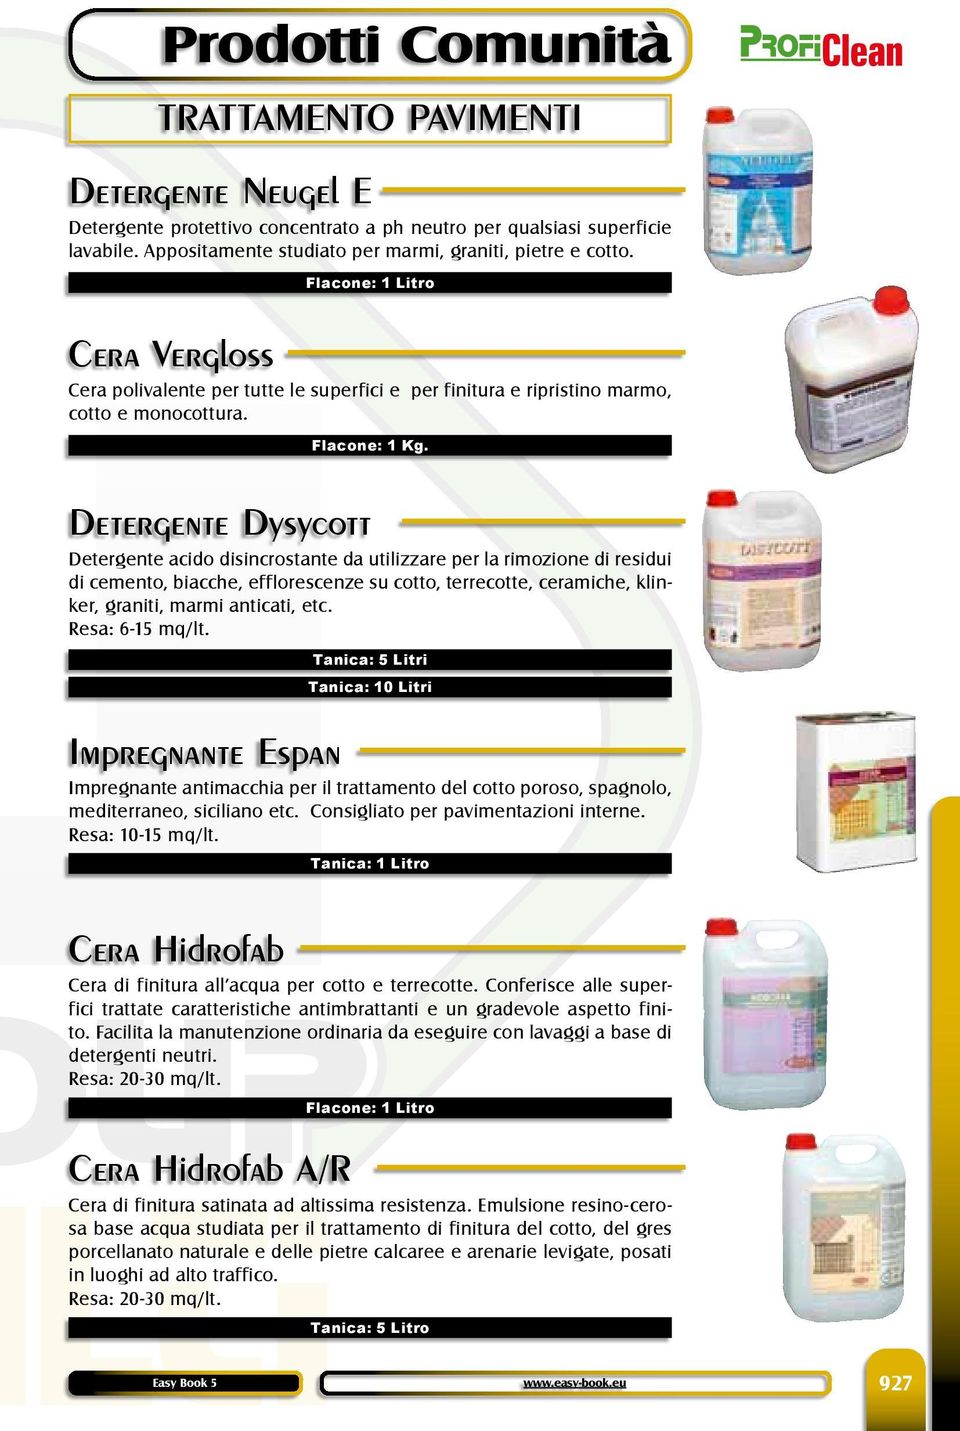 Detergente Dysycott Detergente acido disincrostante da utilizzare per la rimozione di residui di cemento, biacche, efflorescenze su cotto, terrecotte, ceramiche, klinker, graniti, marmi anticati, etc.